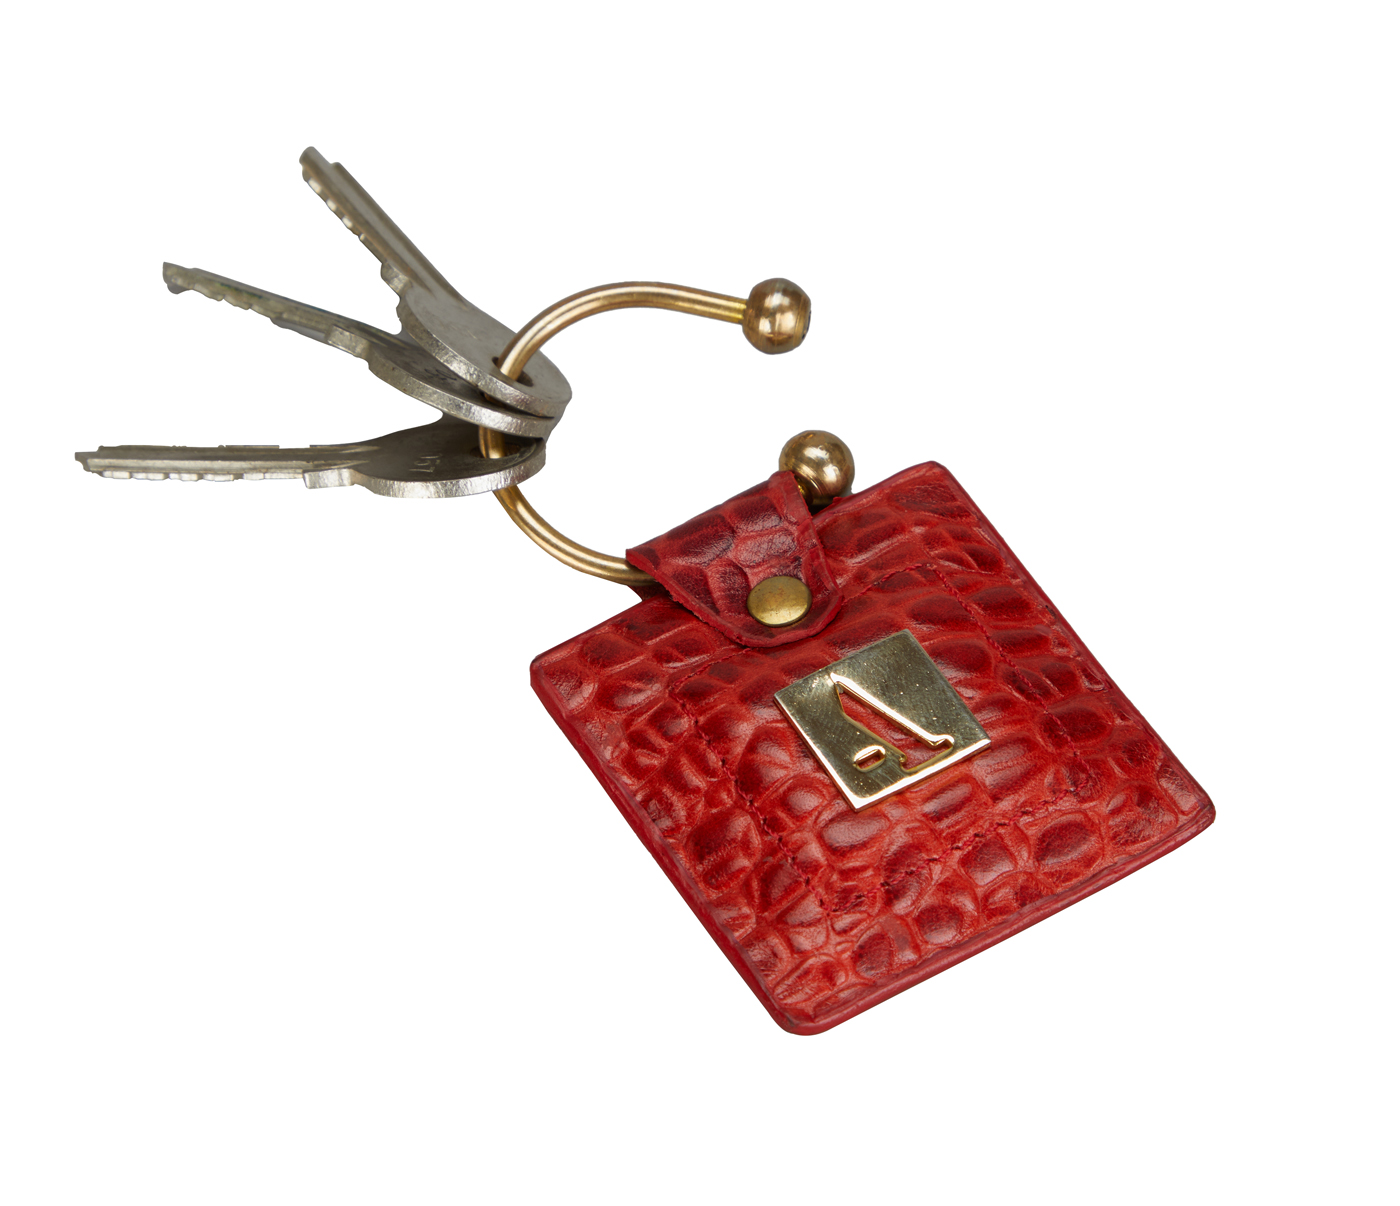 W269--Key holder with knob screw key fitting in Genuine Leather - Tan